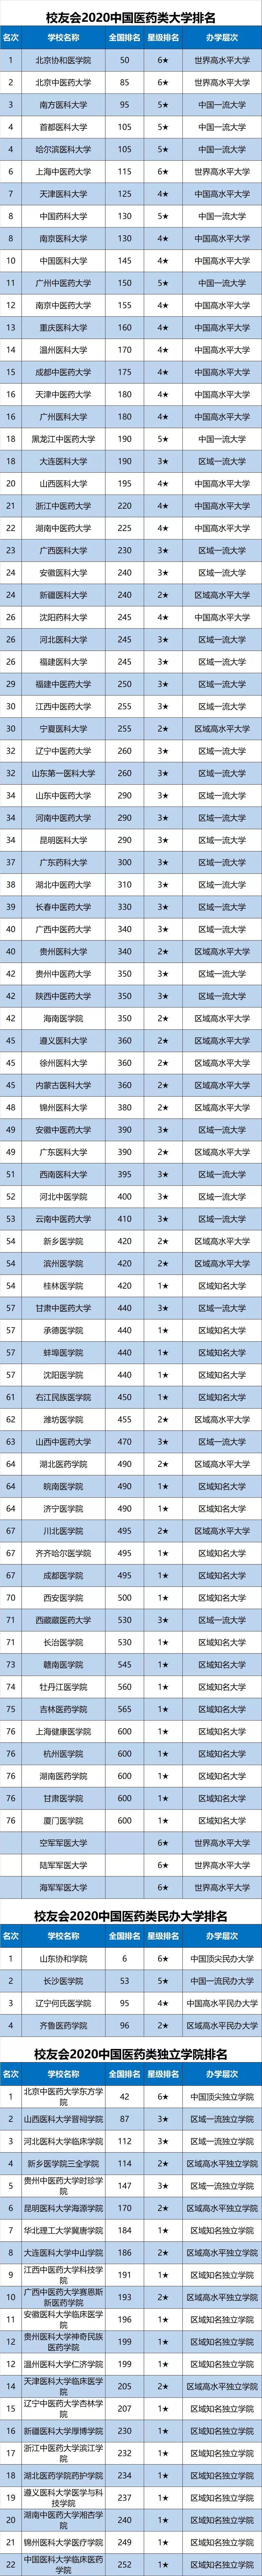 2020中国医科类大学排名